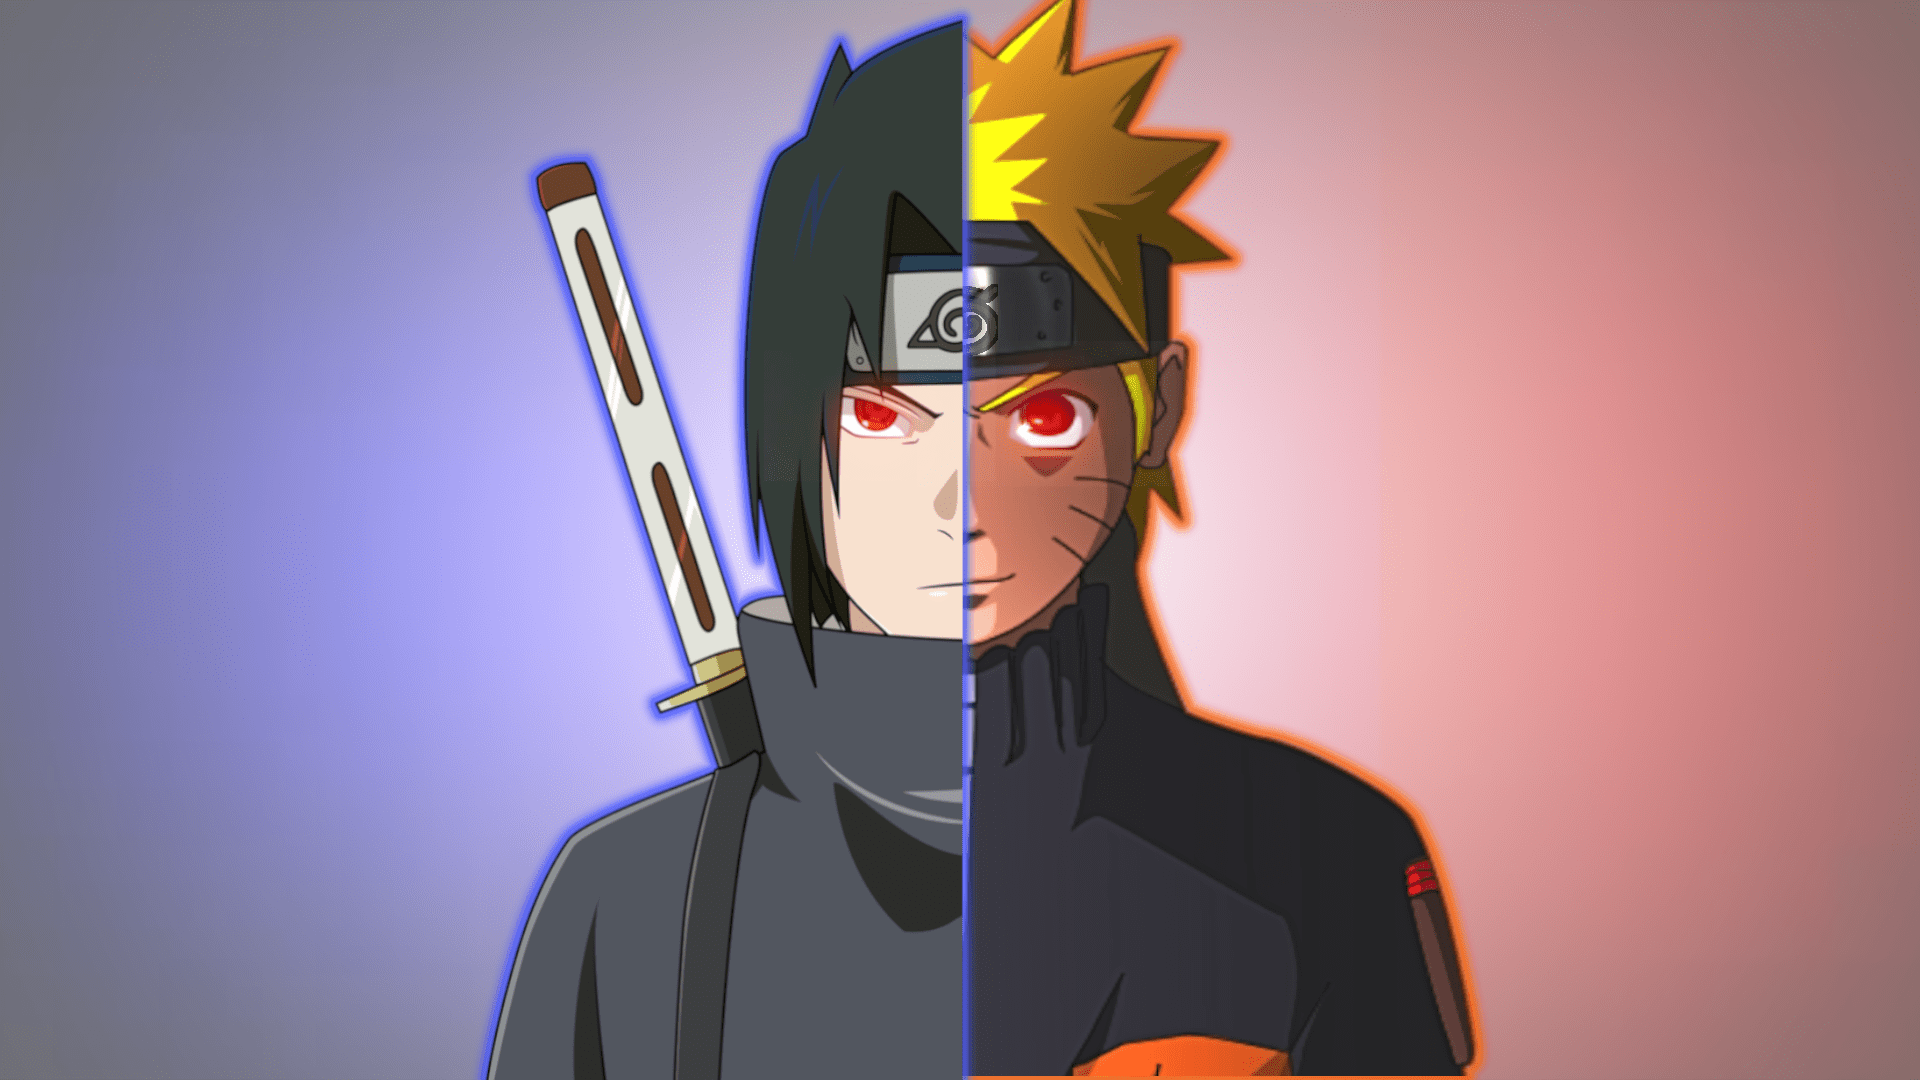 Naruto and Sasuke Wallpaper - NawPic.